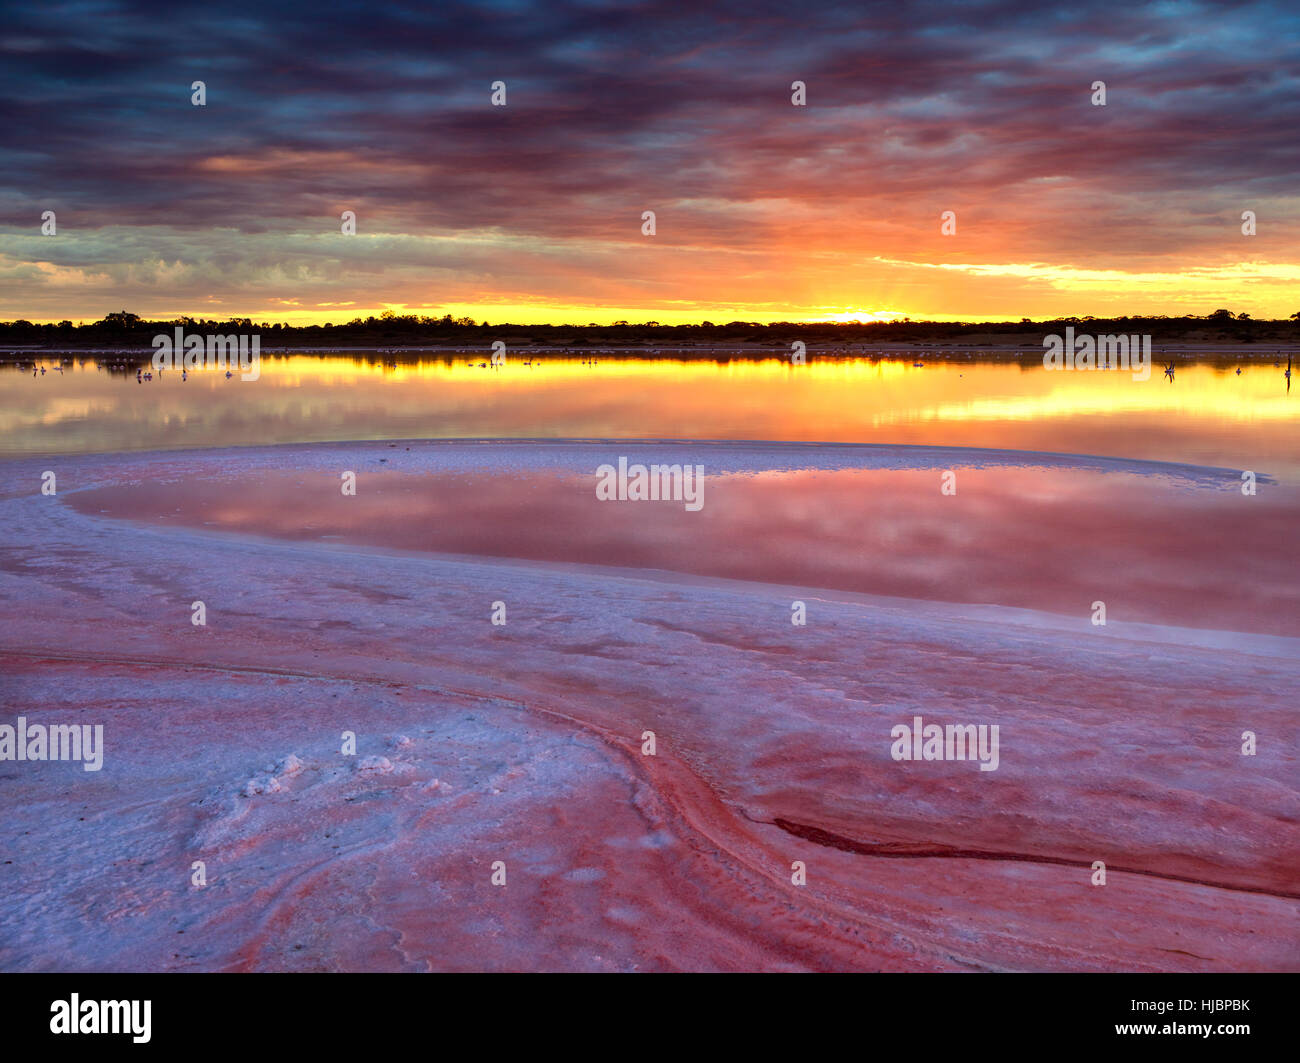 Coucher de soleil sur le lac salin, le marais de Lambert. Situé à l'extrême nord ouest de Victoria, Australie. Sel rose de l'cristallisees rose j'allume Banque D'Images